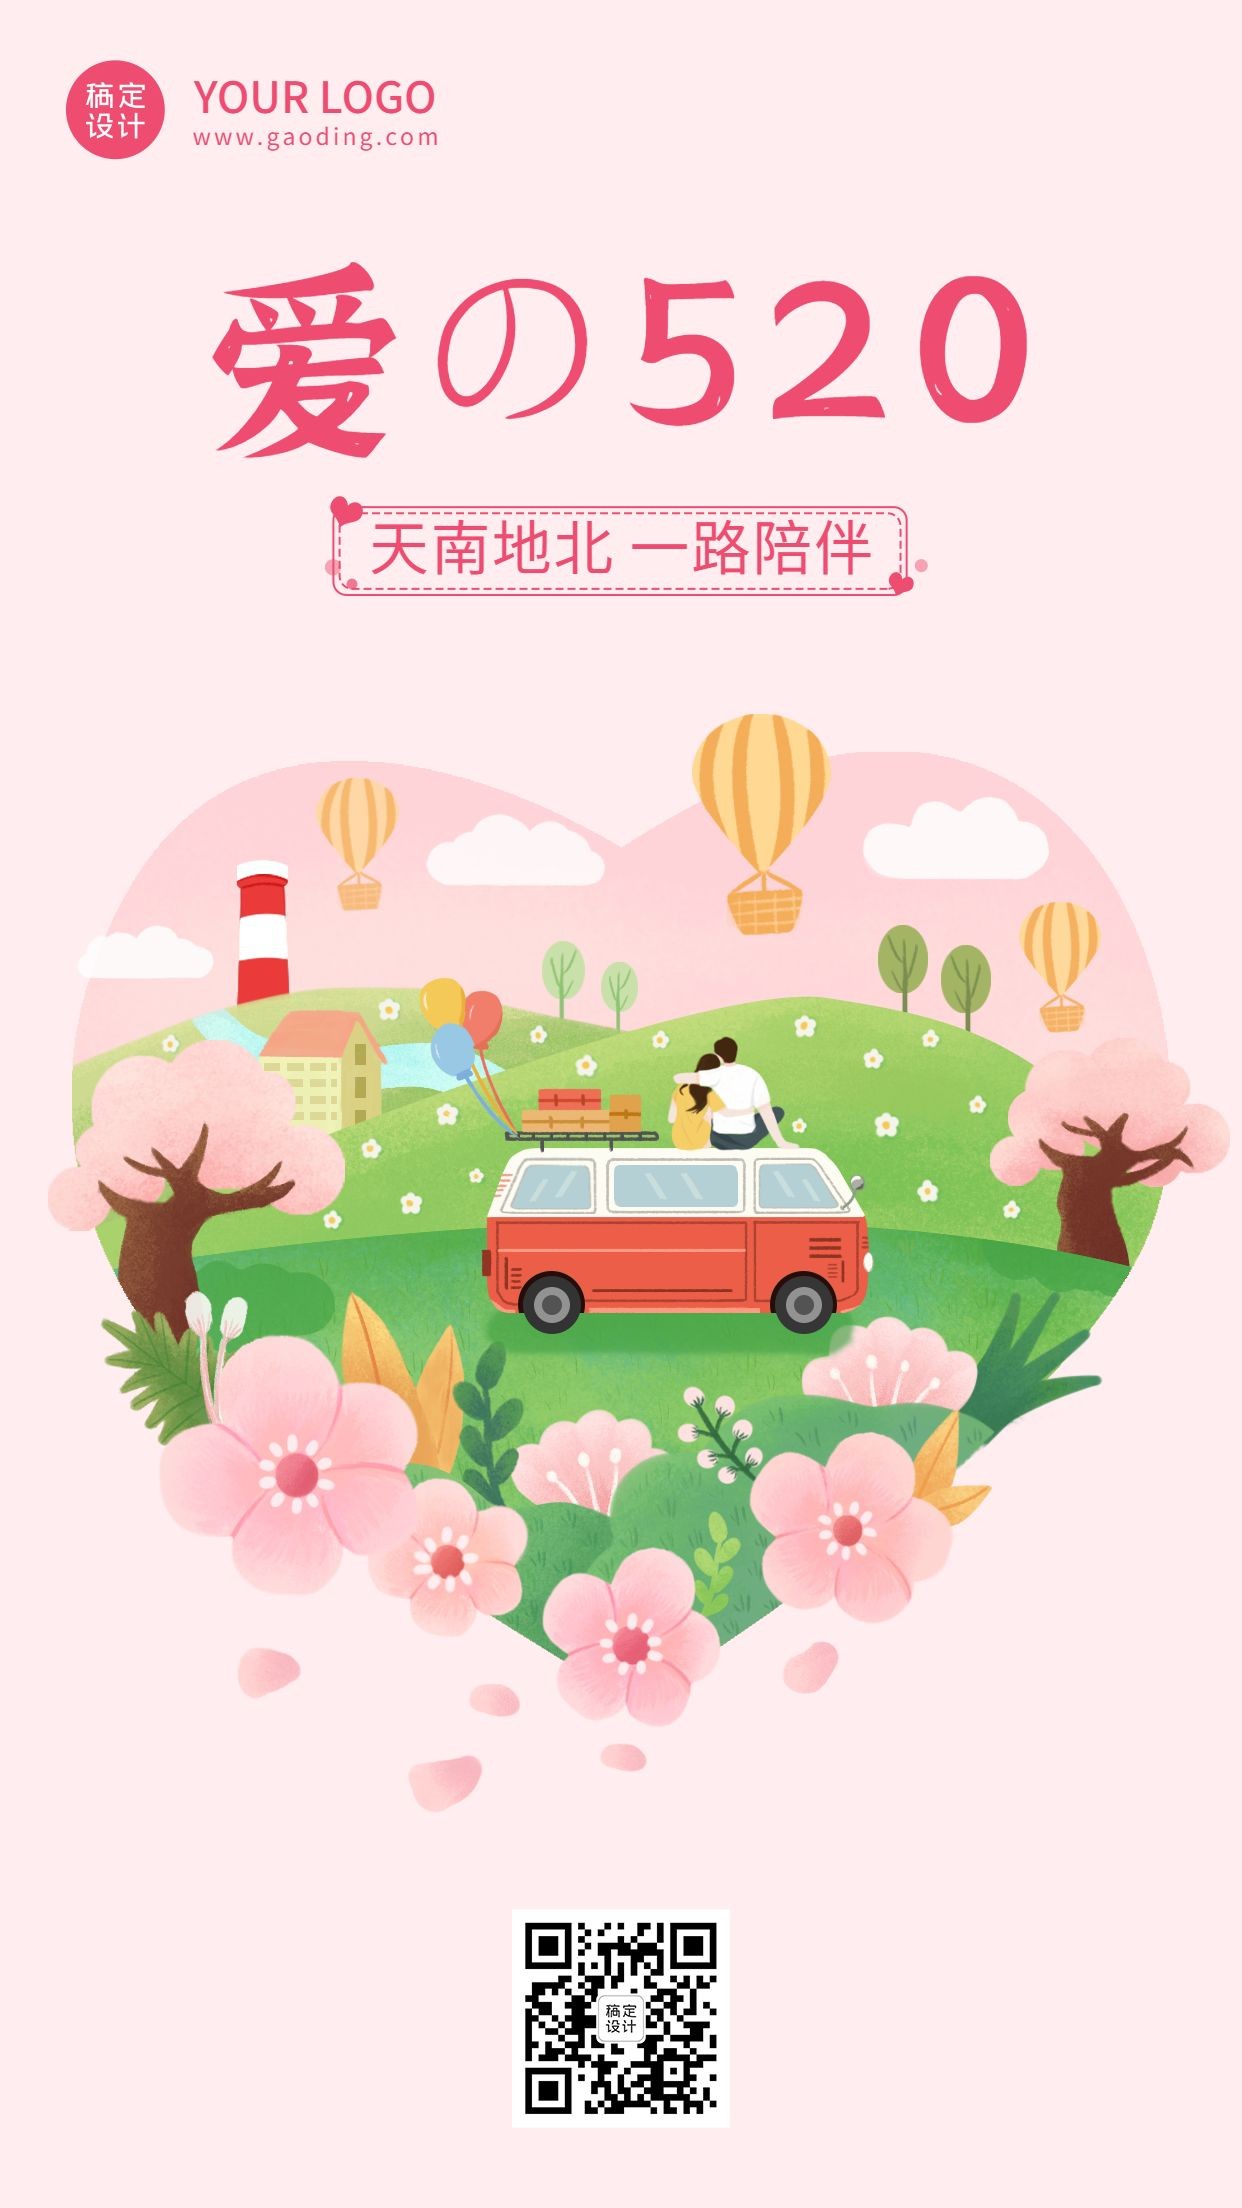 520情人节节日祝福插画手机海报预览效果